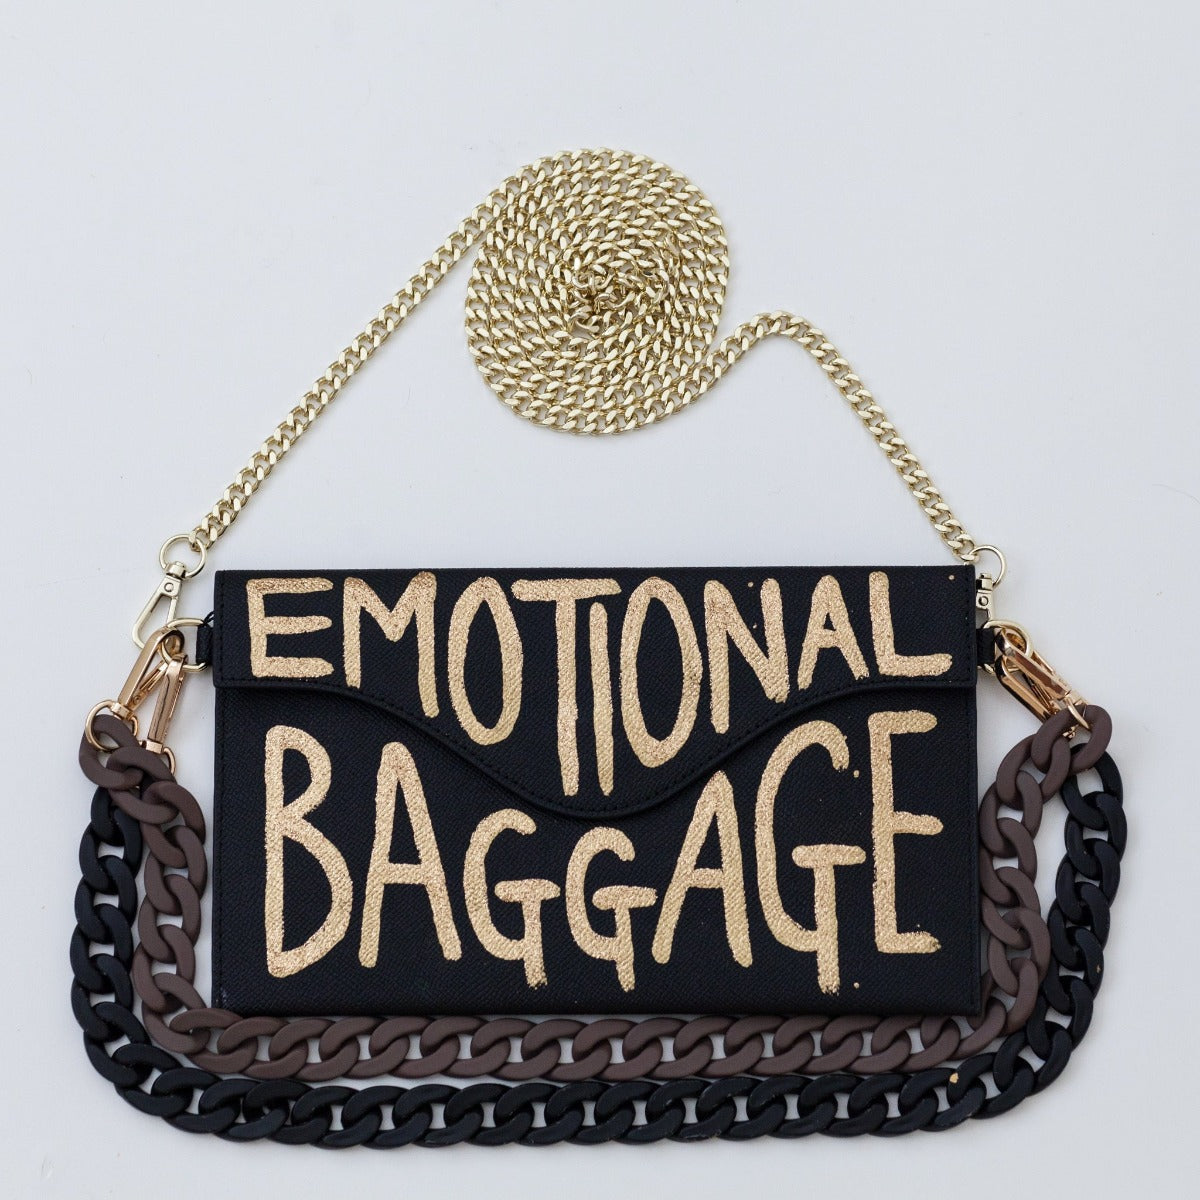 Anca Barbu Sabrina Bag, Emotional Baggage